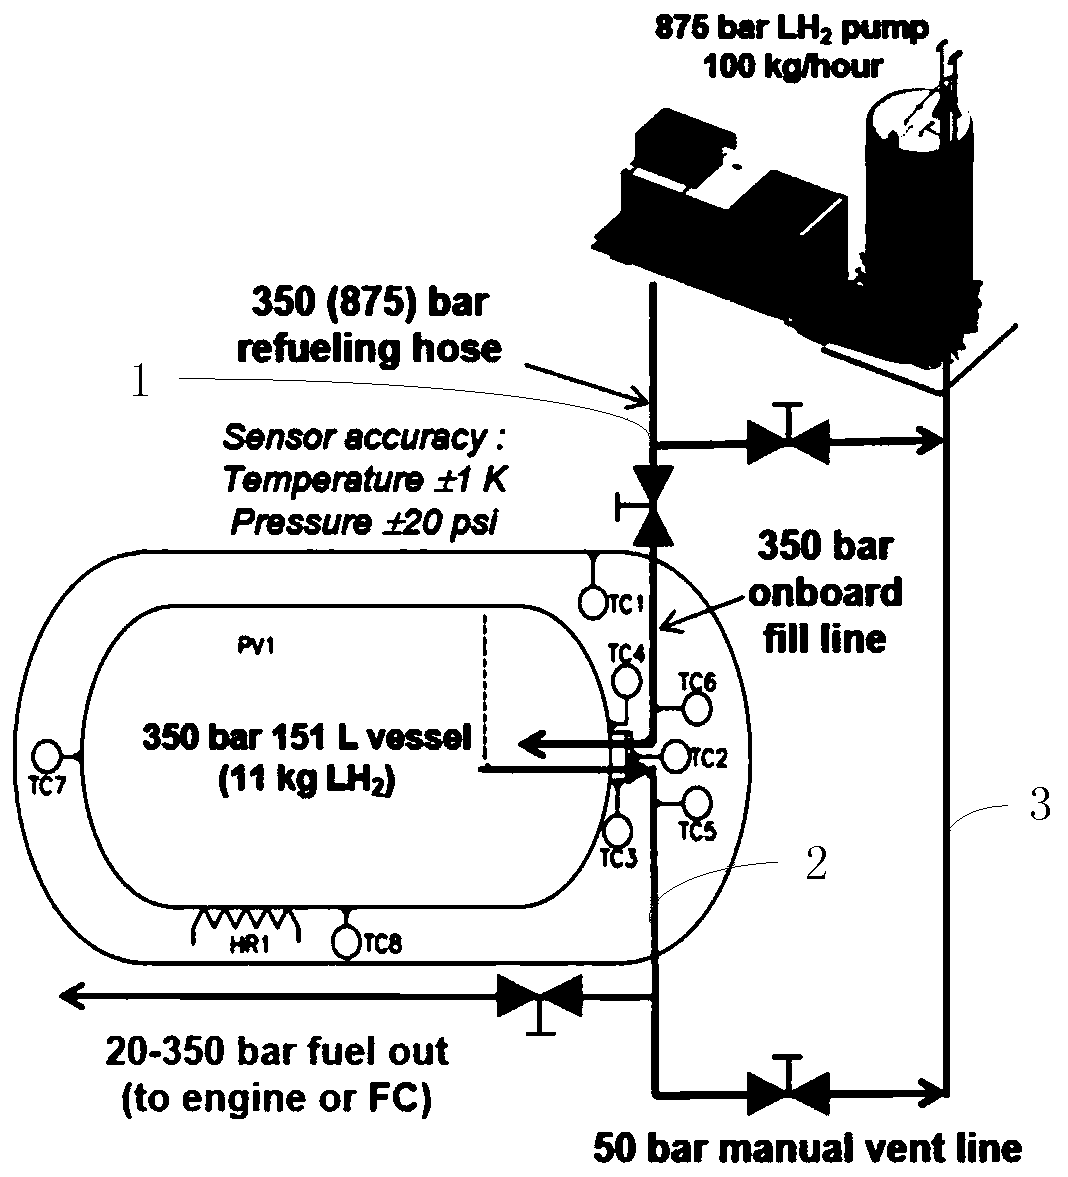 Hydrogen filling system